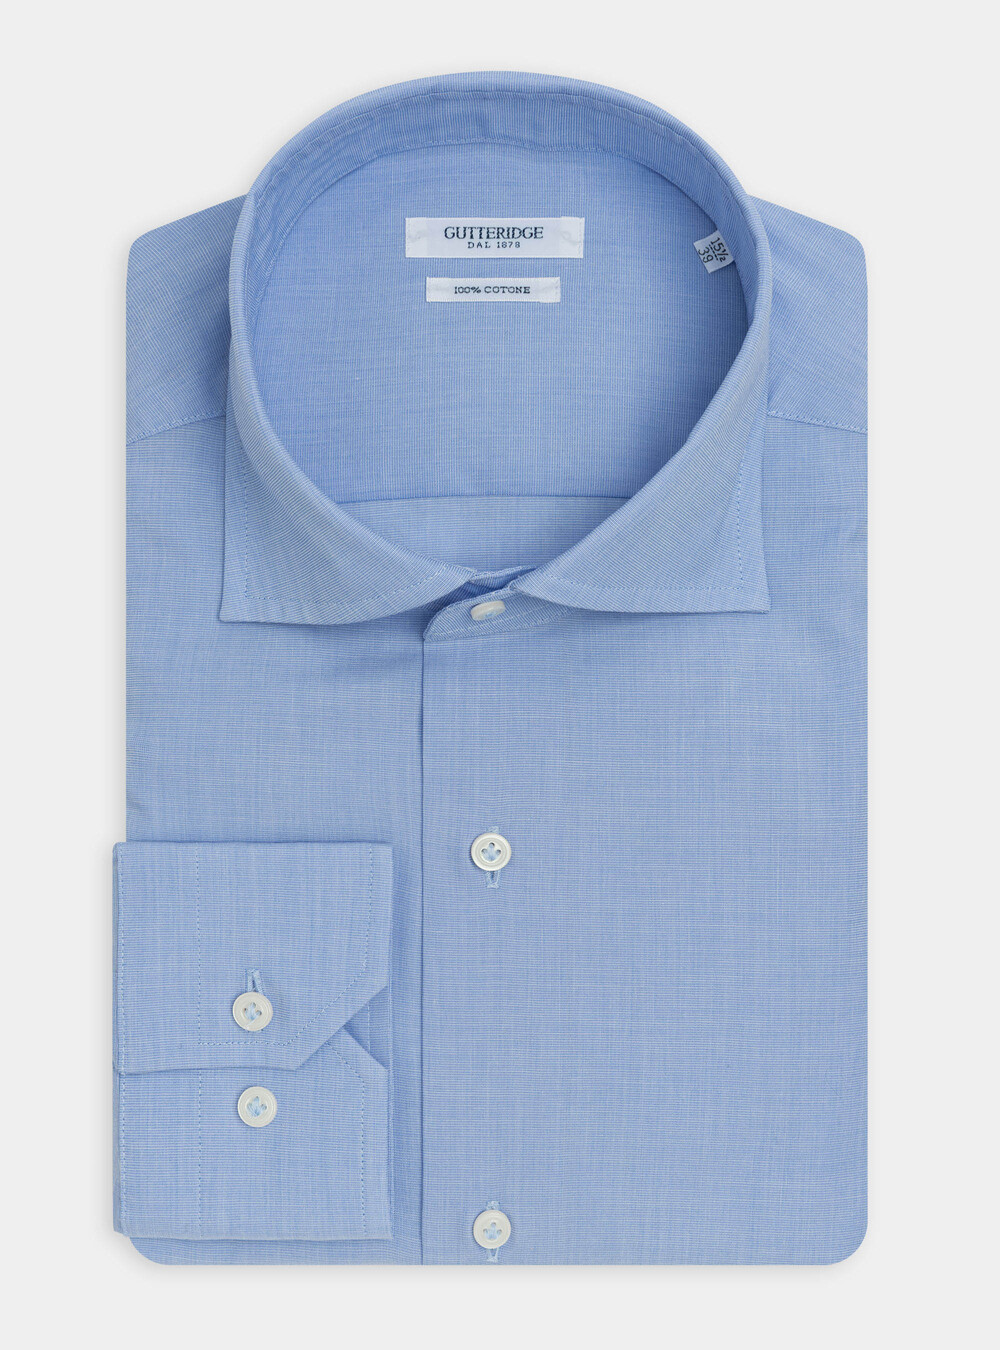 Camicia slim fit in cotone fil a fil | Gutteridge | Camicie Uomo